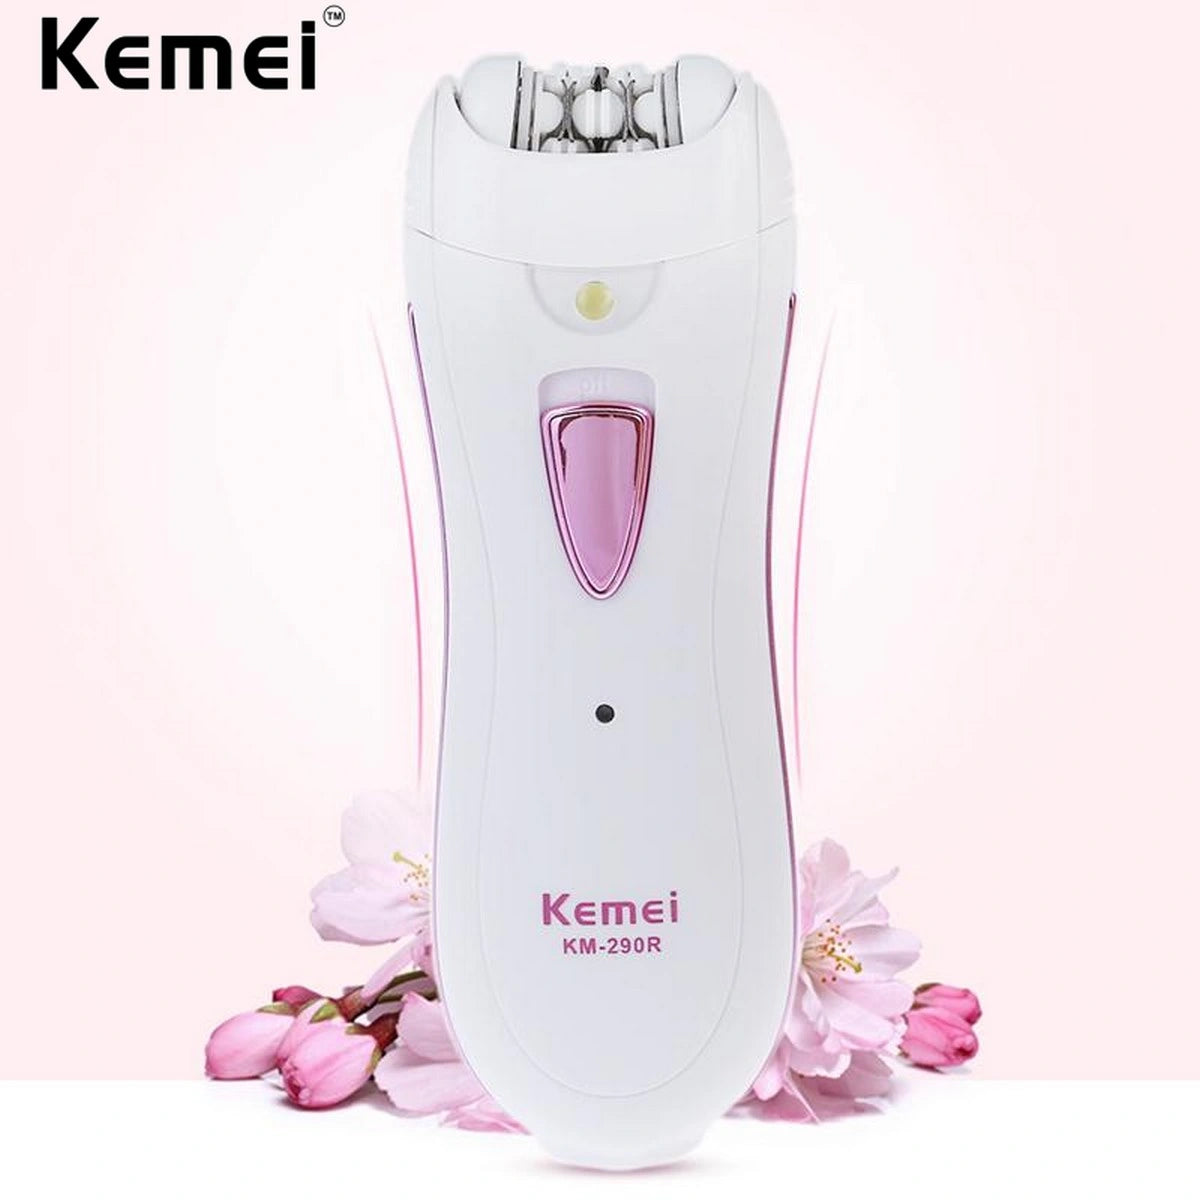 New Kemei Km-290r Women Epilator